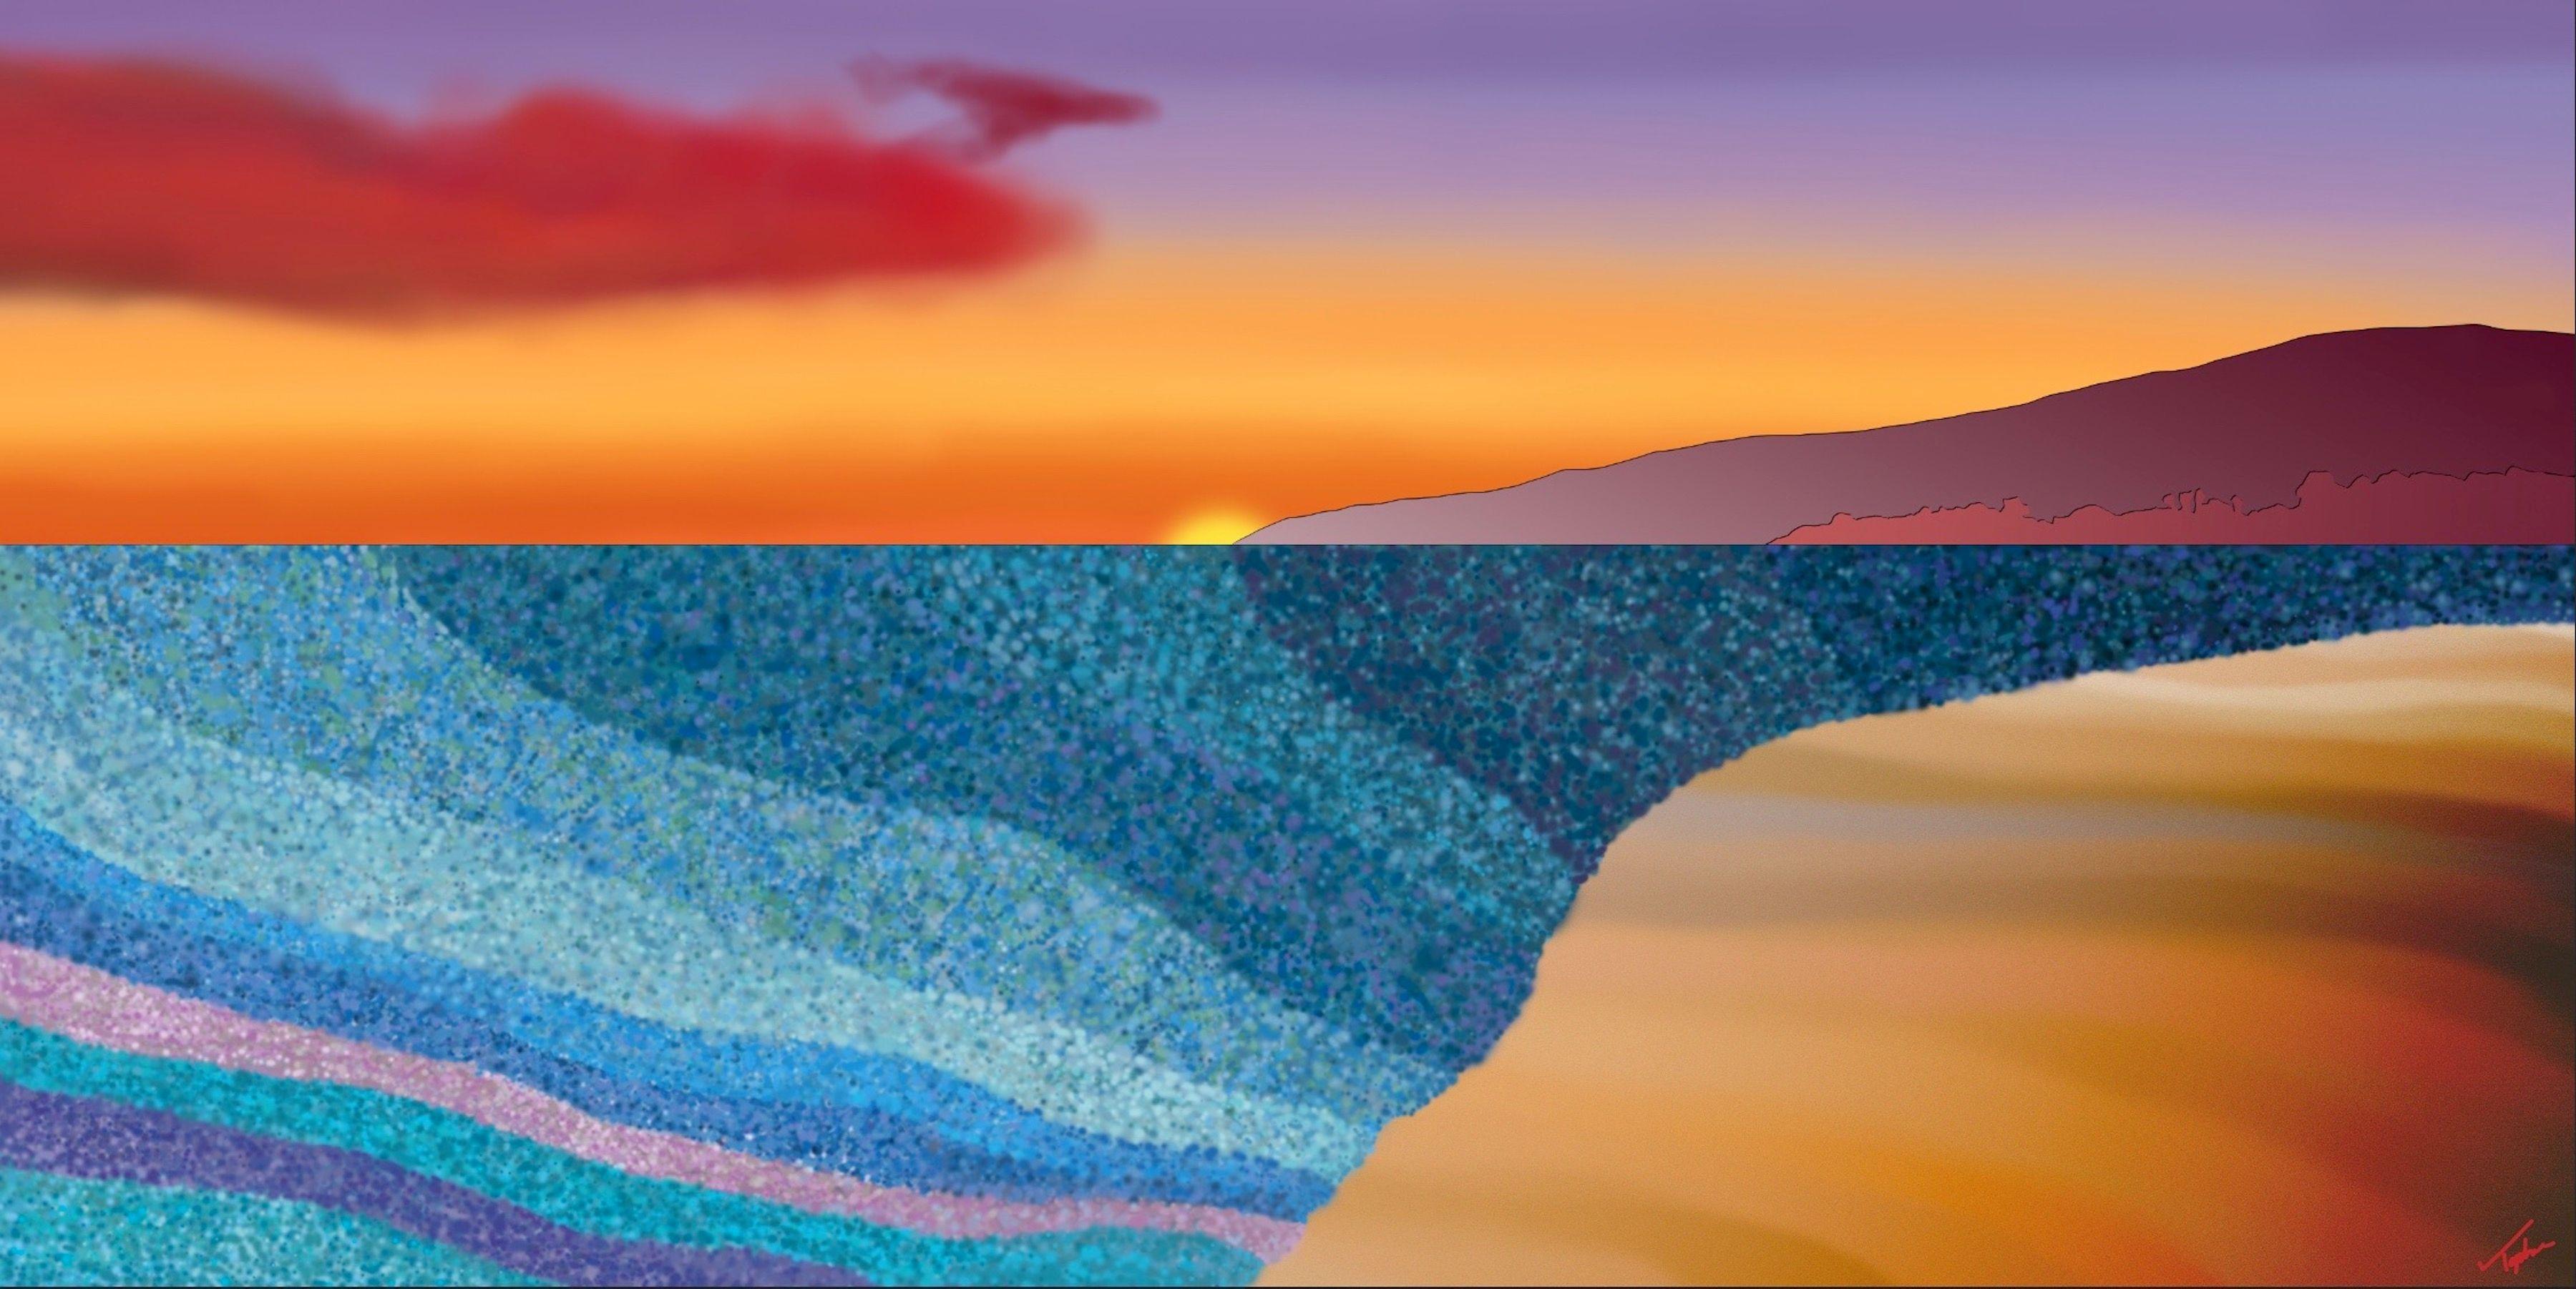 Landscape Painting Topher Straus - Aloha, peinture de paysage impressionniste moderne, 2022, édition limitée